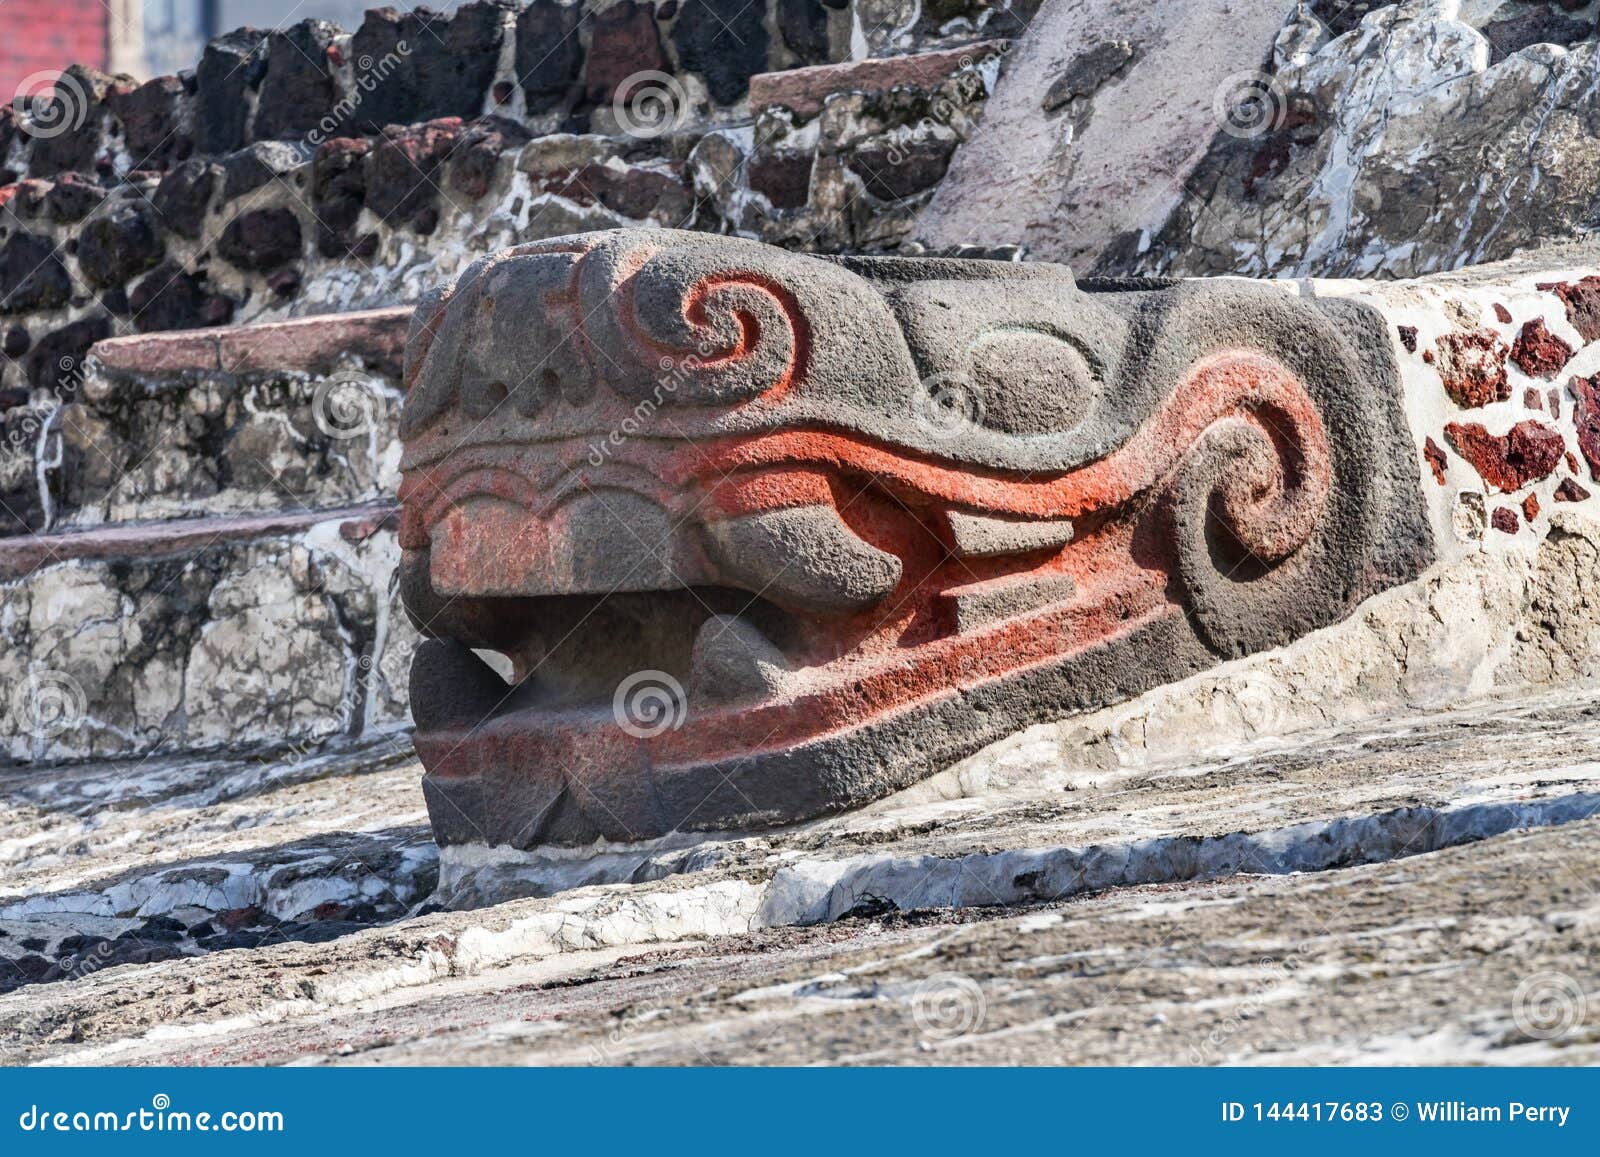 ancient aztec snake stone statue templo mayor mexico city mexico